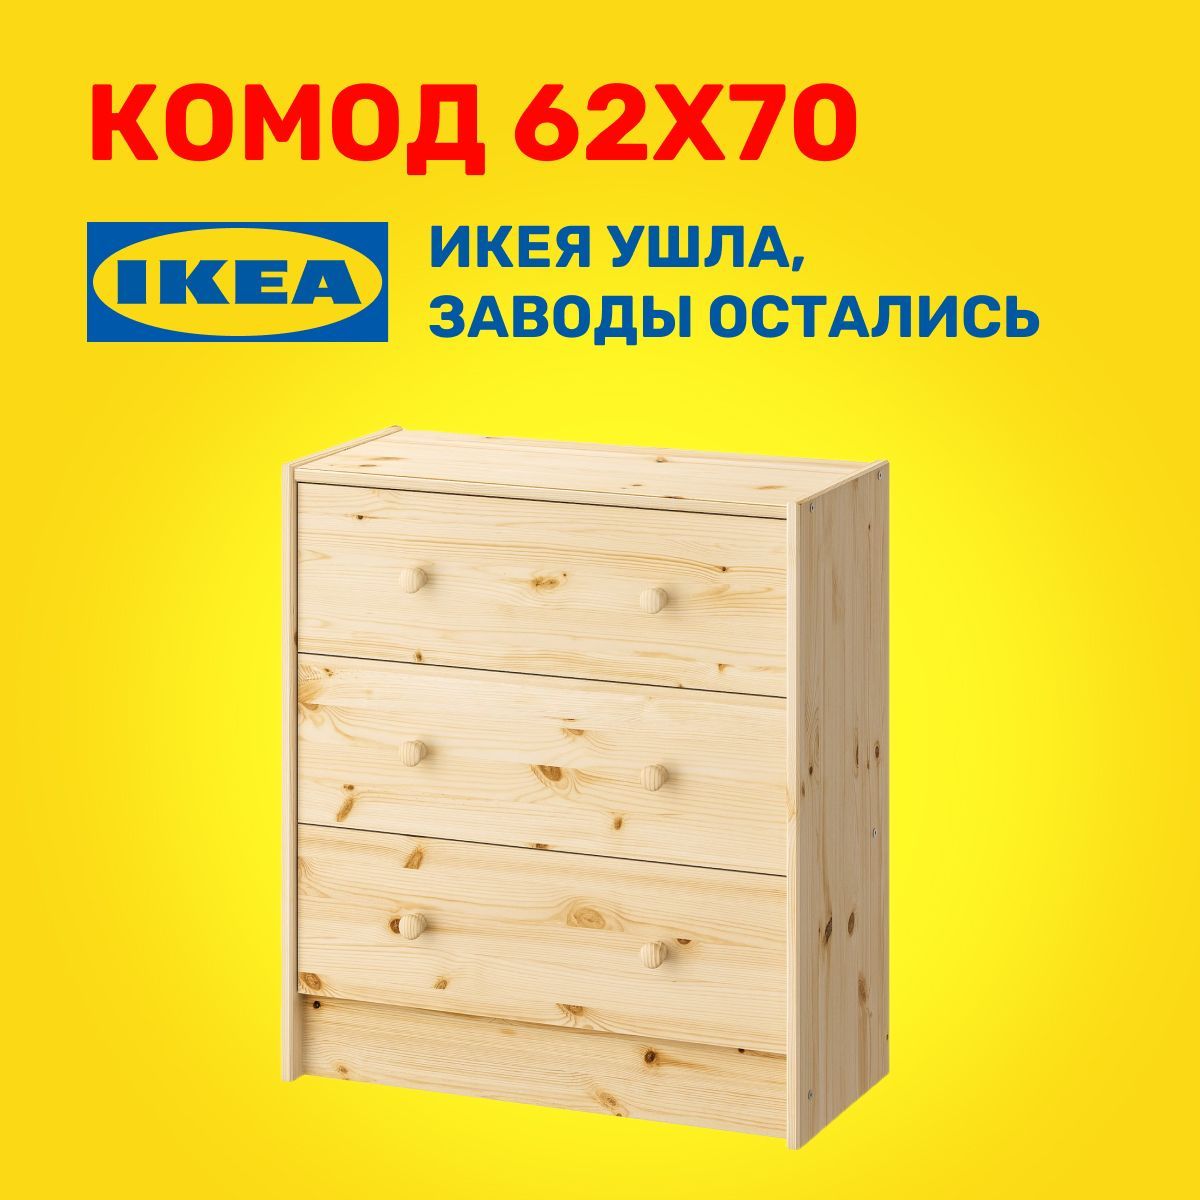 Ikea раст 3 ящика фото 53